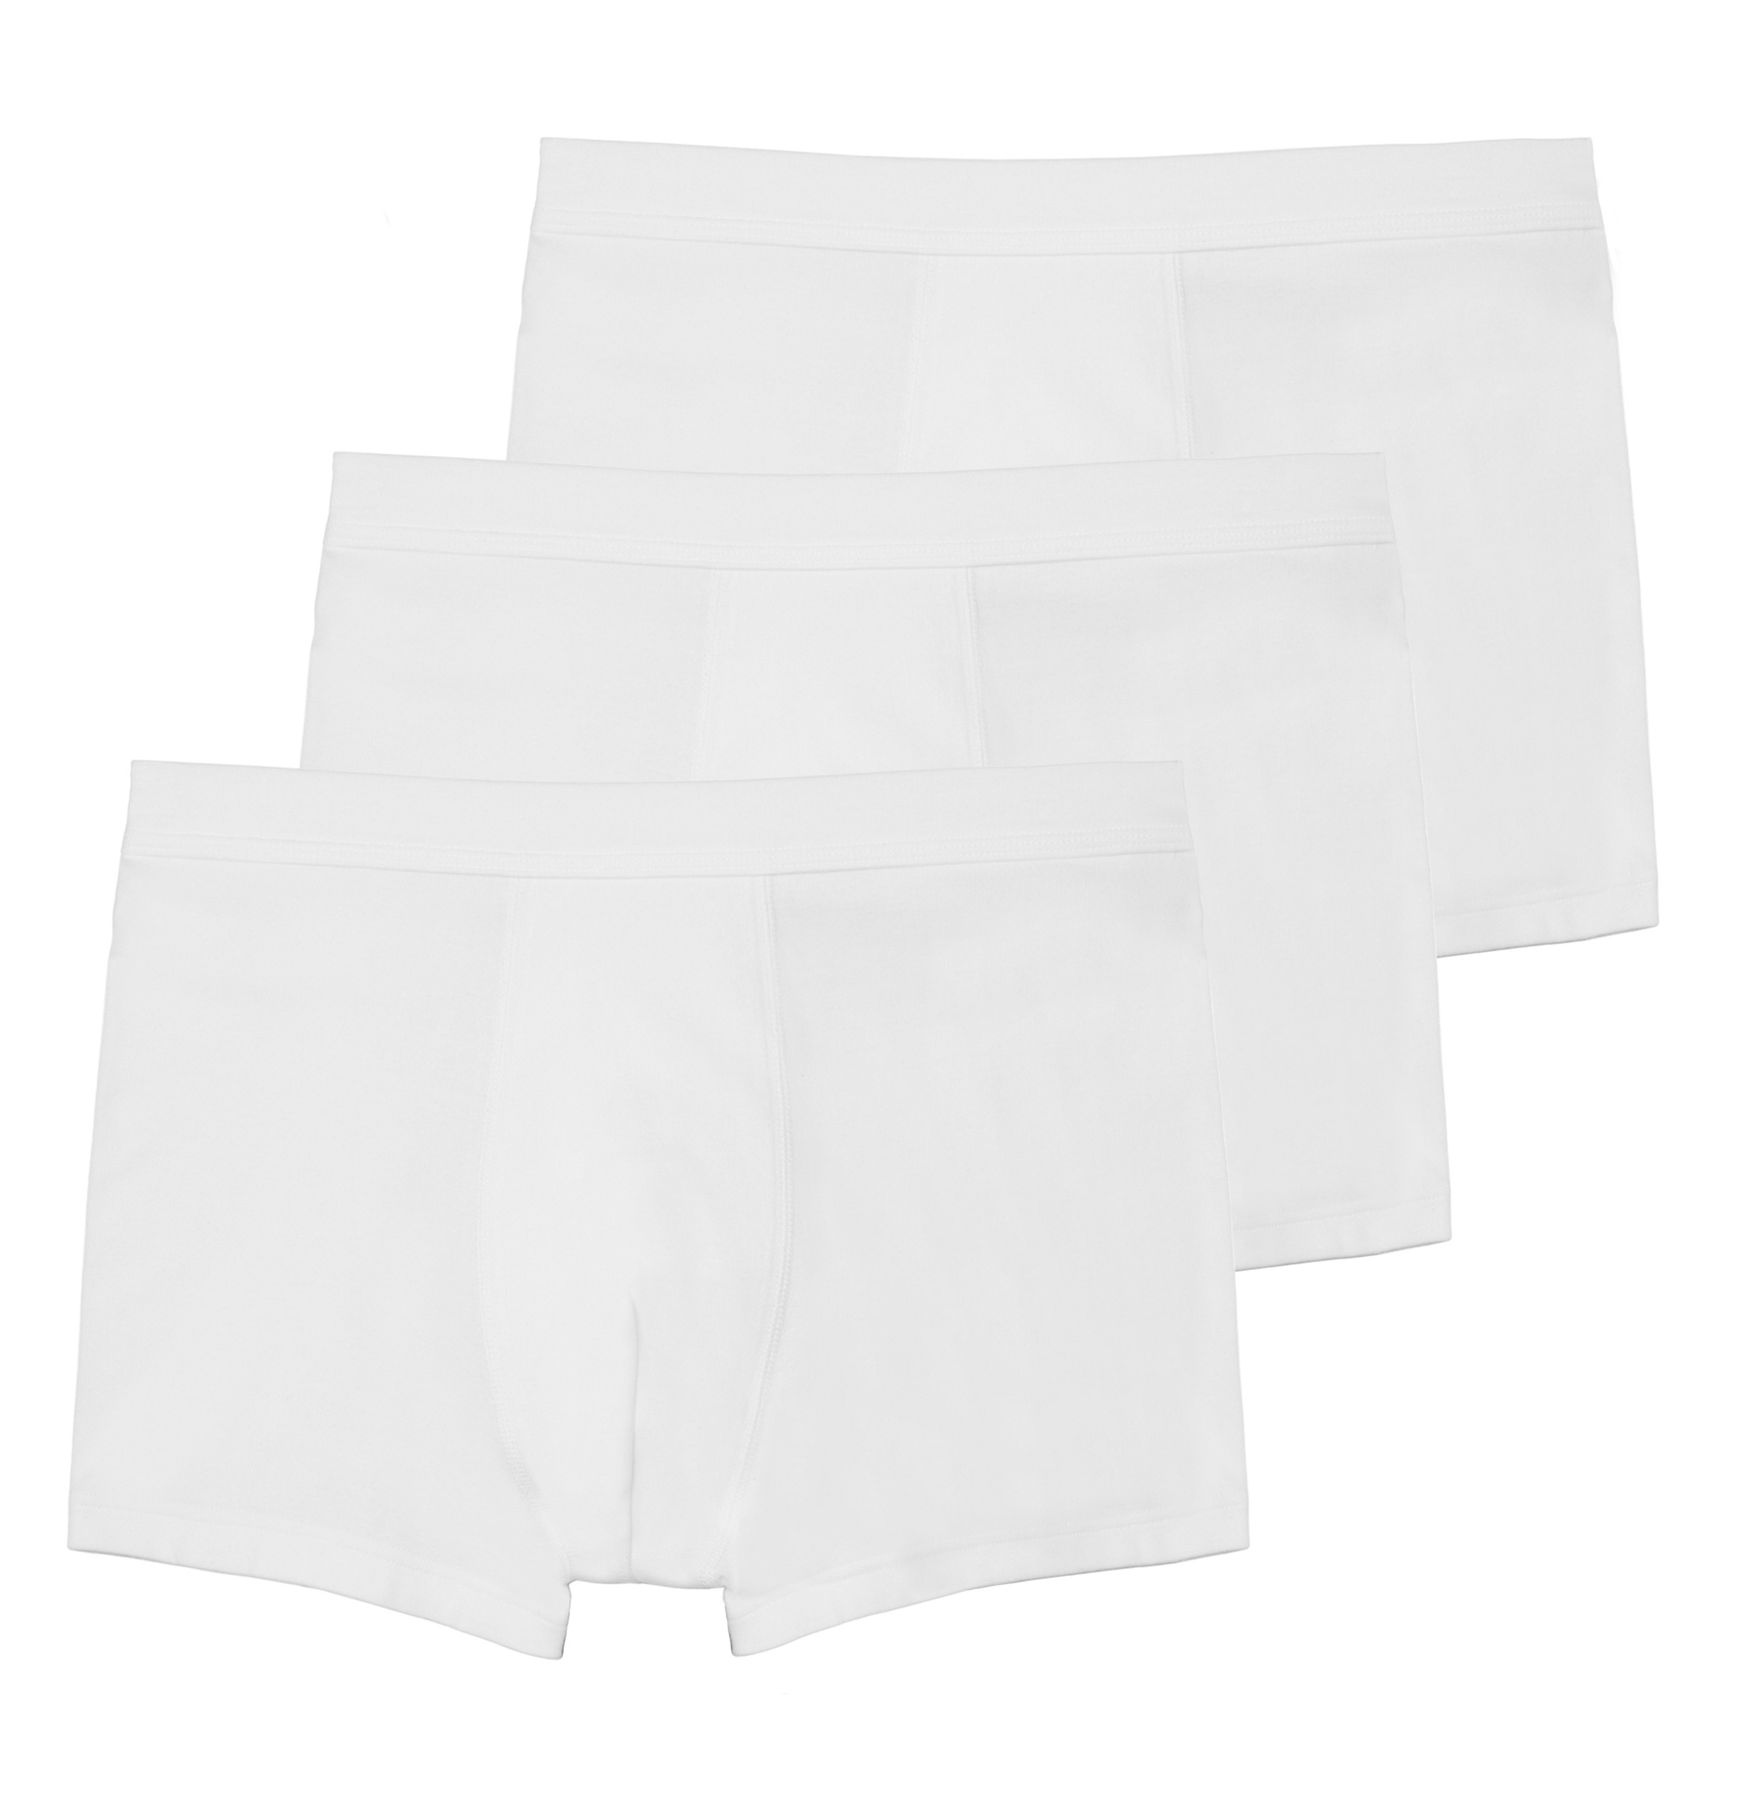 Боксеры Haasis Bodywear 3er-Set: Pants, белый